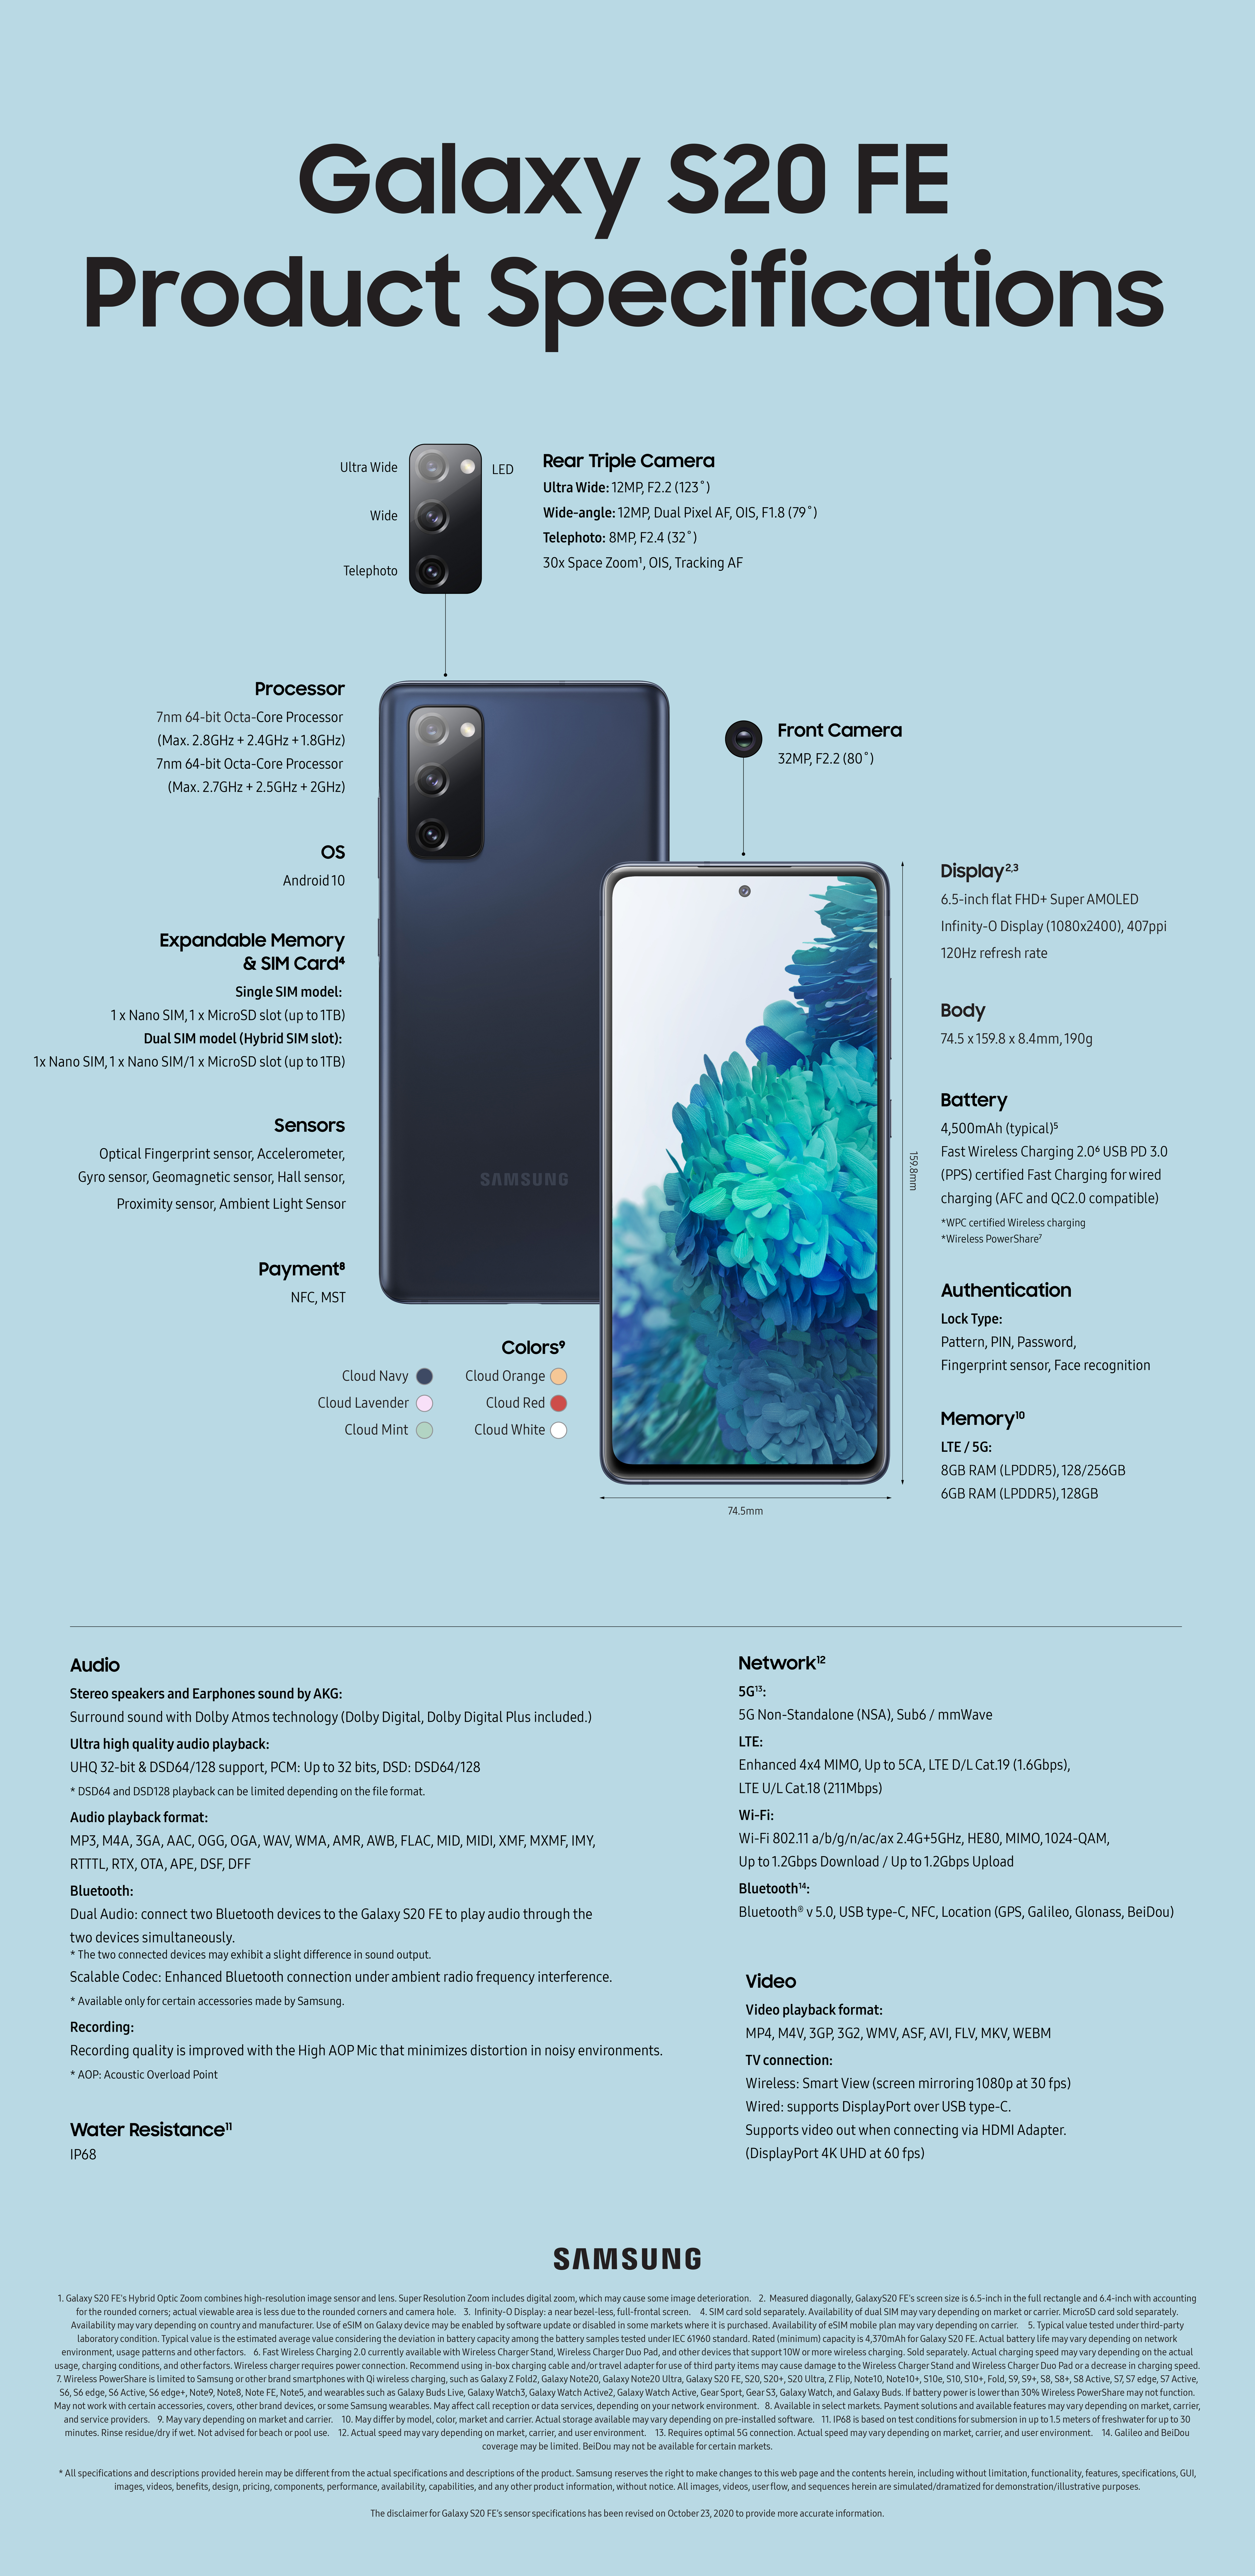 tijger meteoor ventilatie Specs] Do What You Love with the Galaxy S20 FE – Samsung Mobile Press